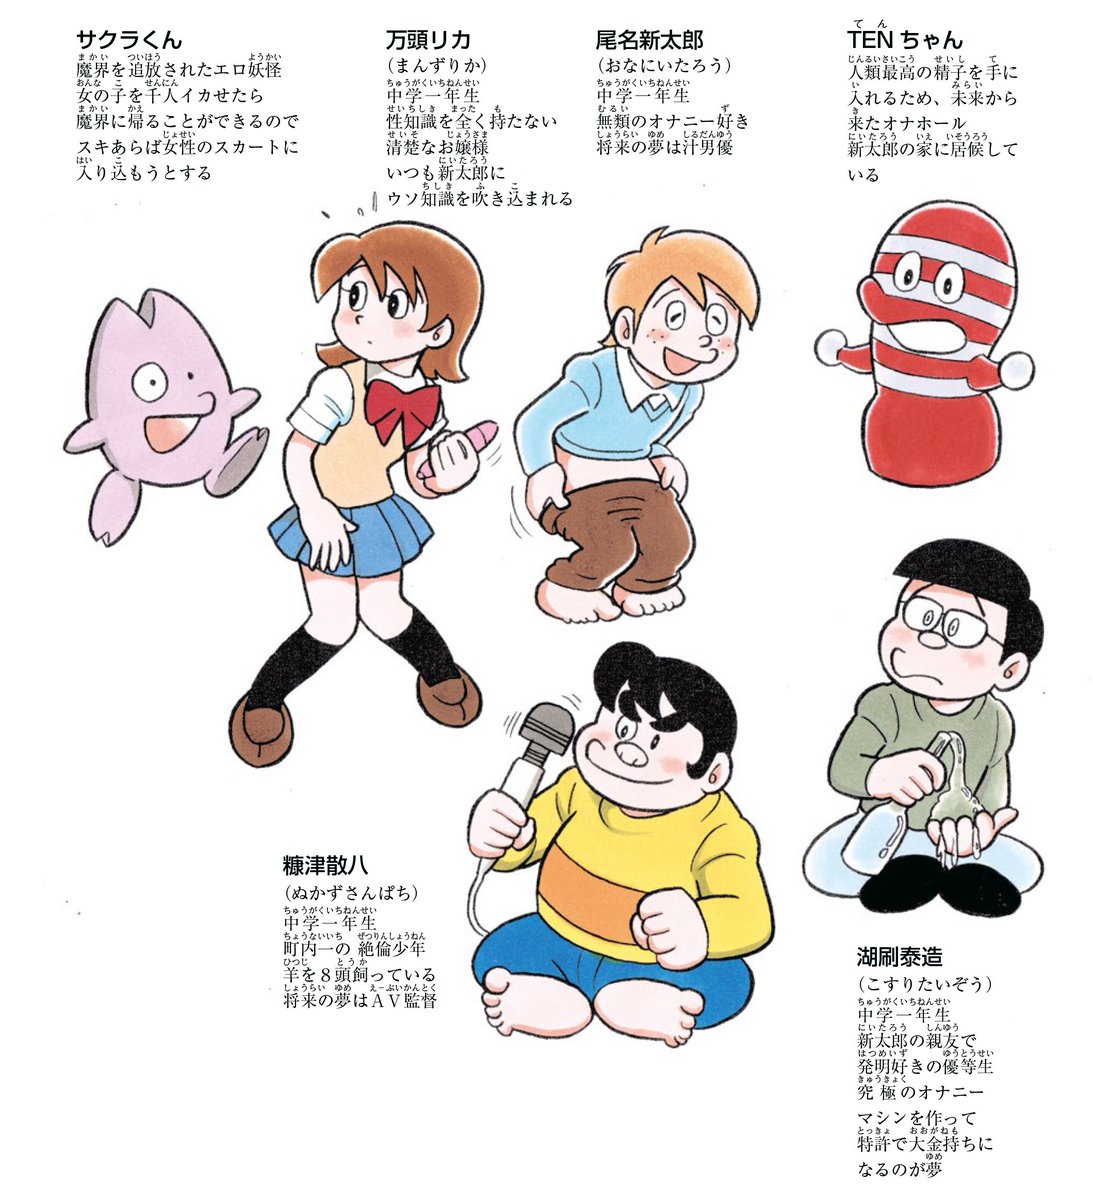 本日の再アップ
よいこの漫画『TENちゃん』のキャラクター設定 